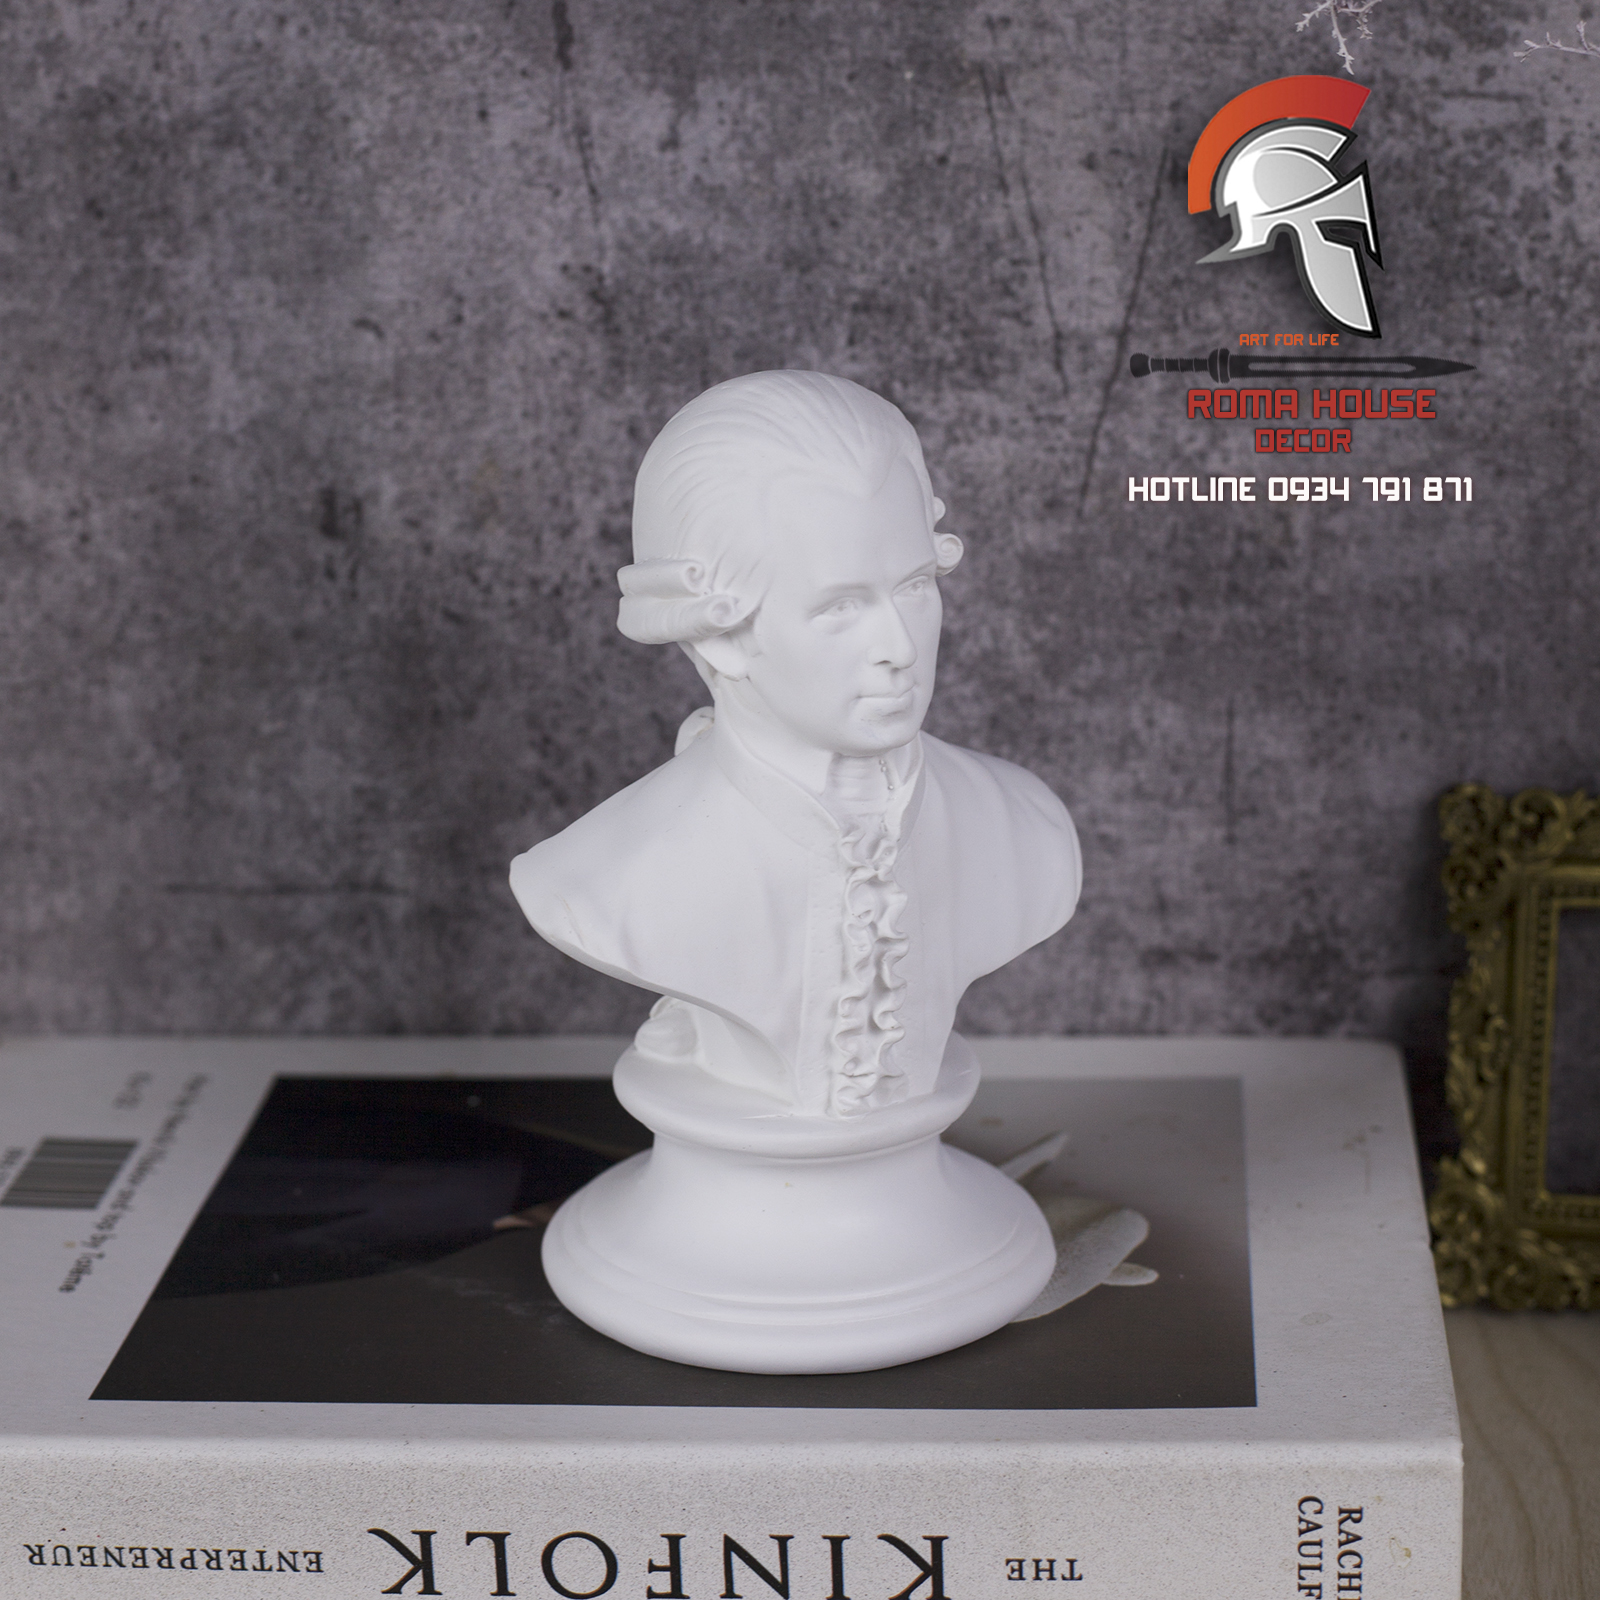 Tượng bán thân nhà soạn nhạc Mozart composite thạch cao- dùng trang trí, tập kí họa, DIY